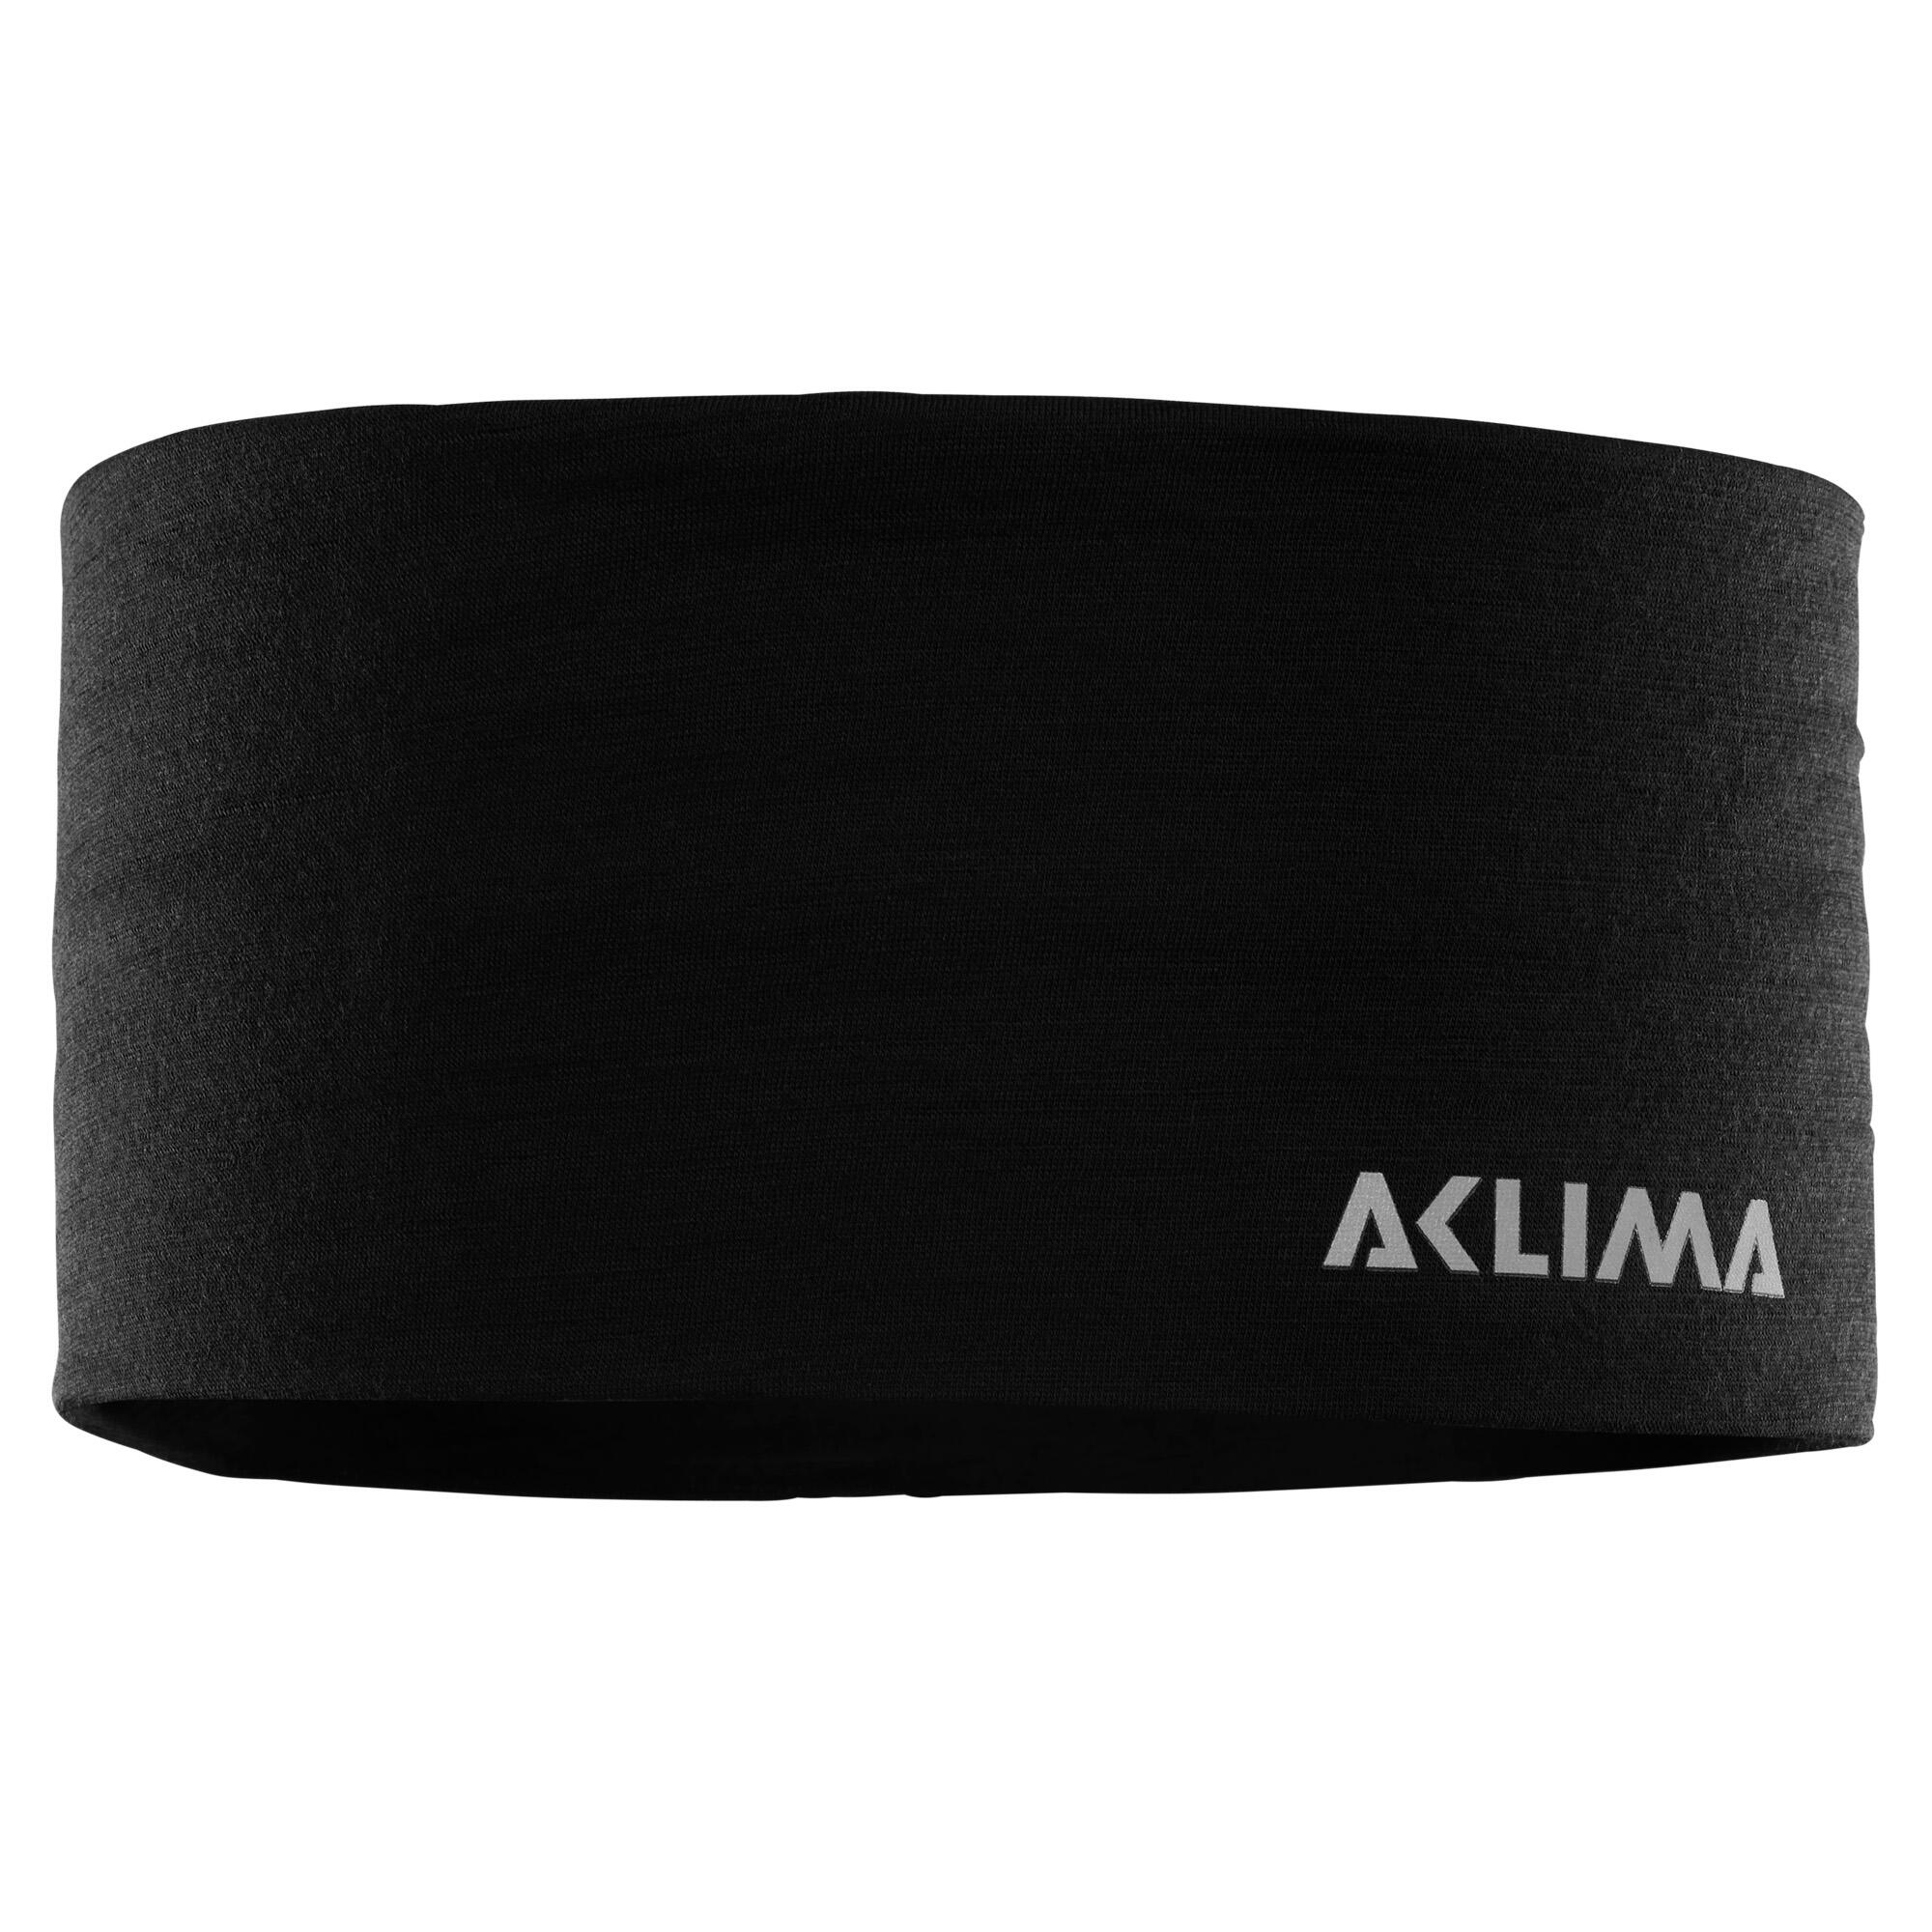 Billede af Aclima Large Headband Black hos Outdoor i Centrum